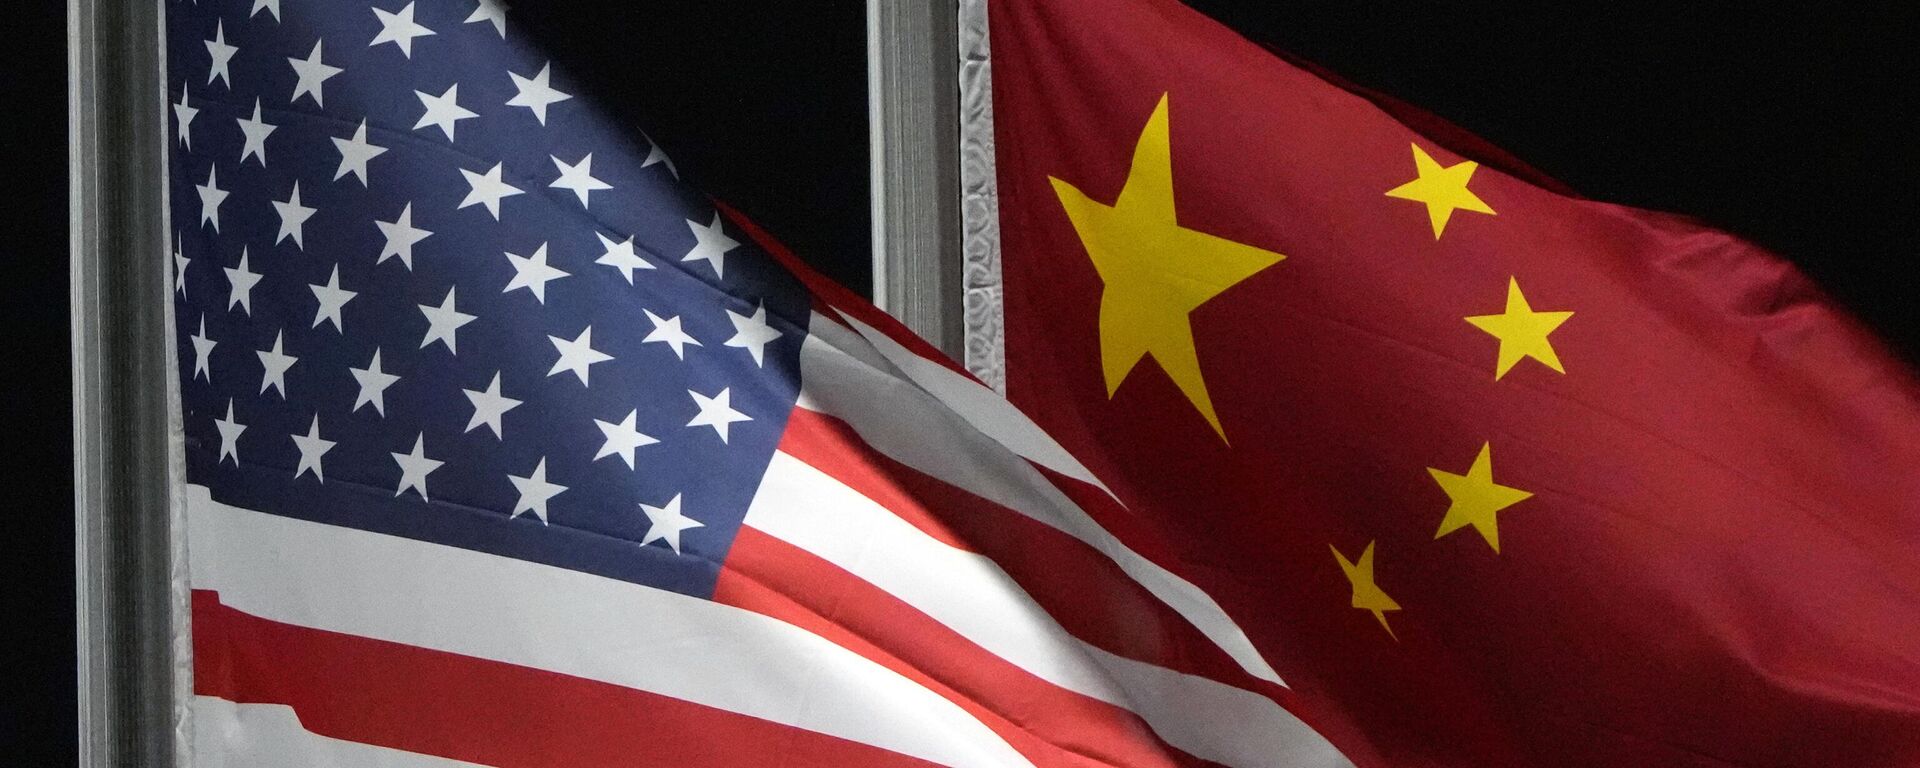 Bandeiras dos EUA e da China tremulam no parque Genting Snow, antes dos Jogos Olímpicos de Inverno de 2022. Zhangjiakou, China, 2 de fevereiro de 2022 - Sputnik Brasil, 1920, 17.11.2023